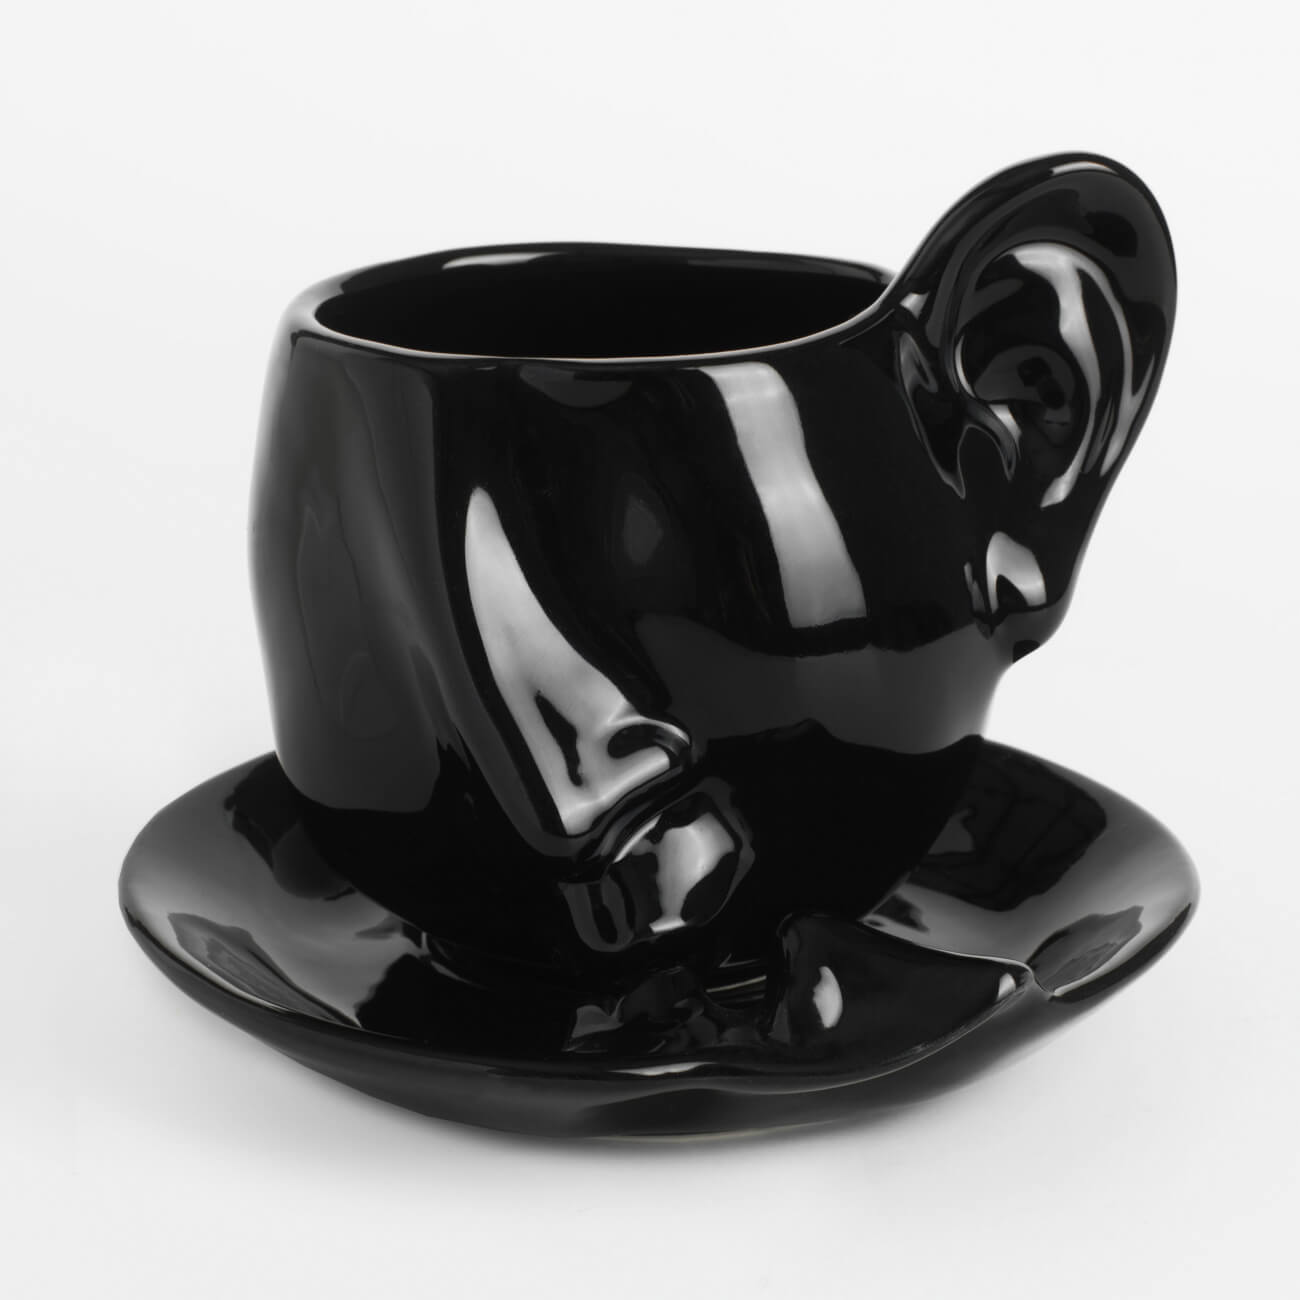 Пара чайная, 1 перс, 2 пр, 320 мл, керамика, черная, Поцелуй, Baise изображение № 1